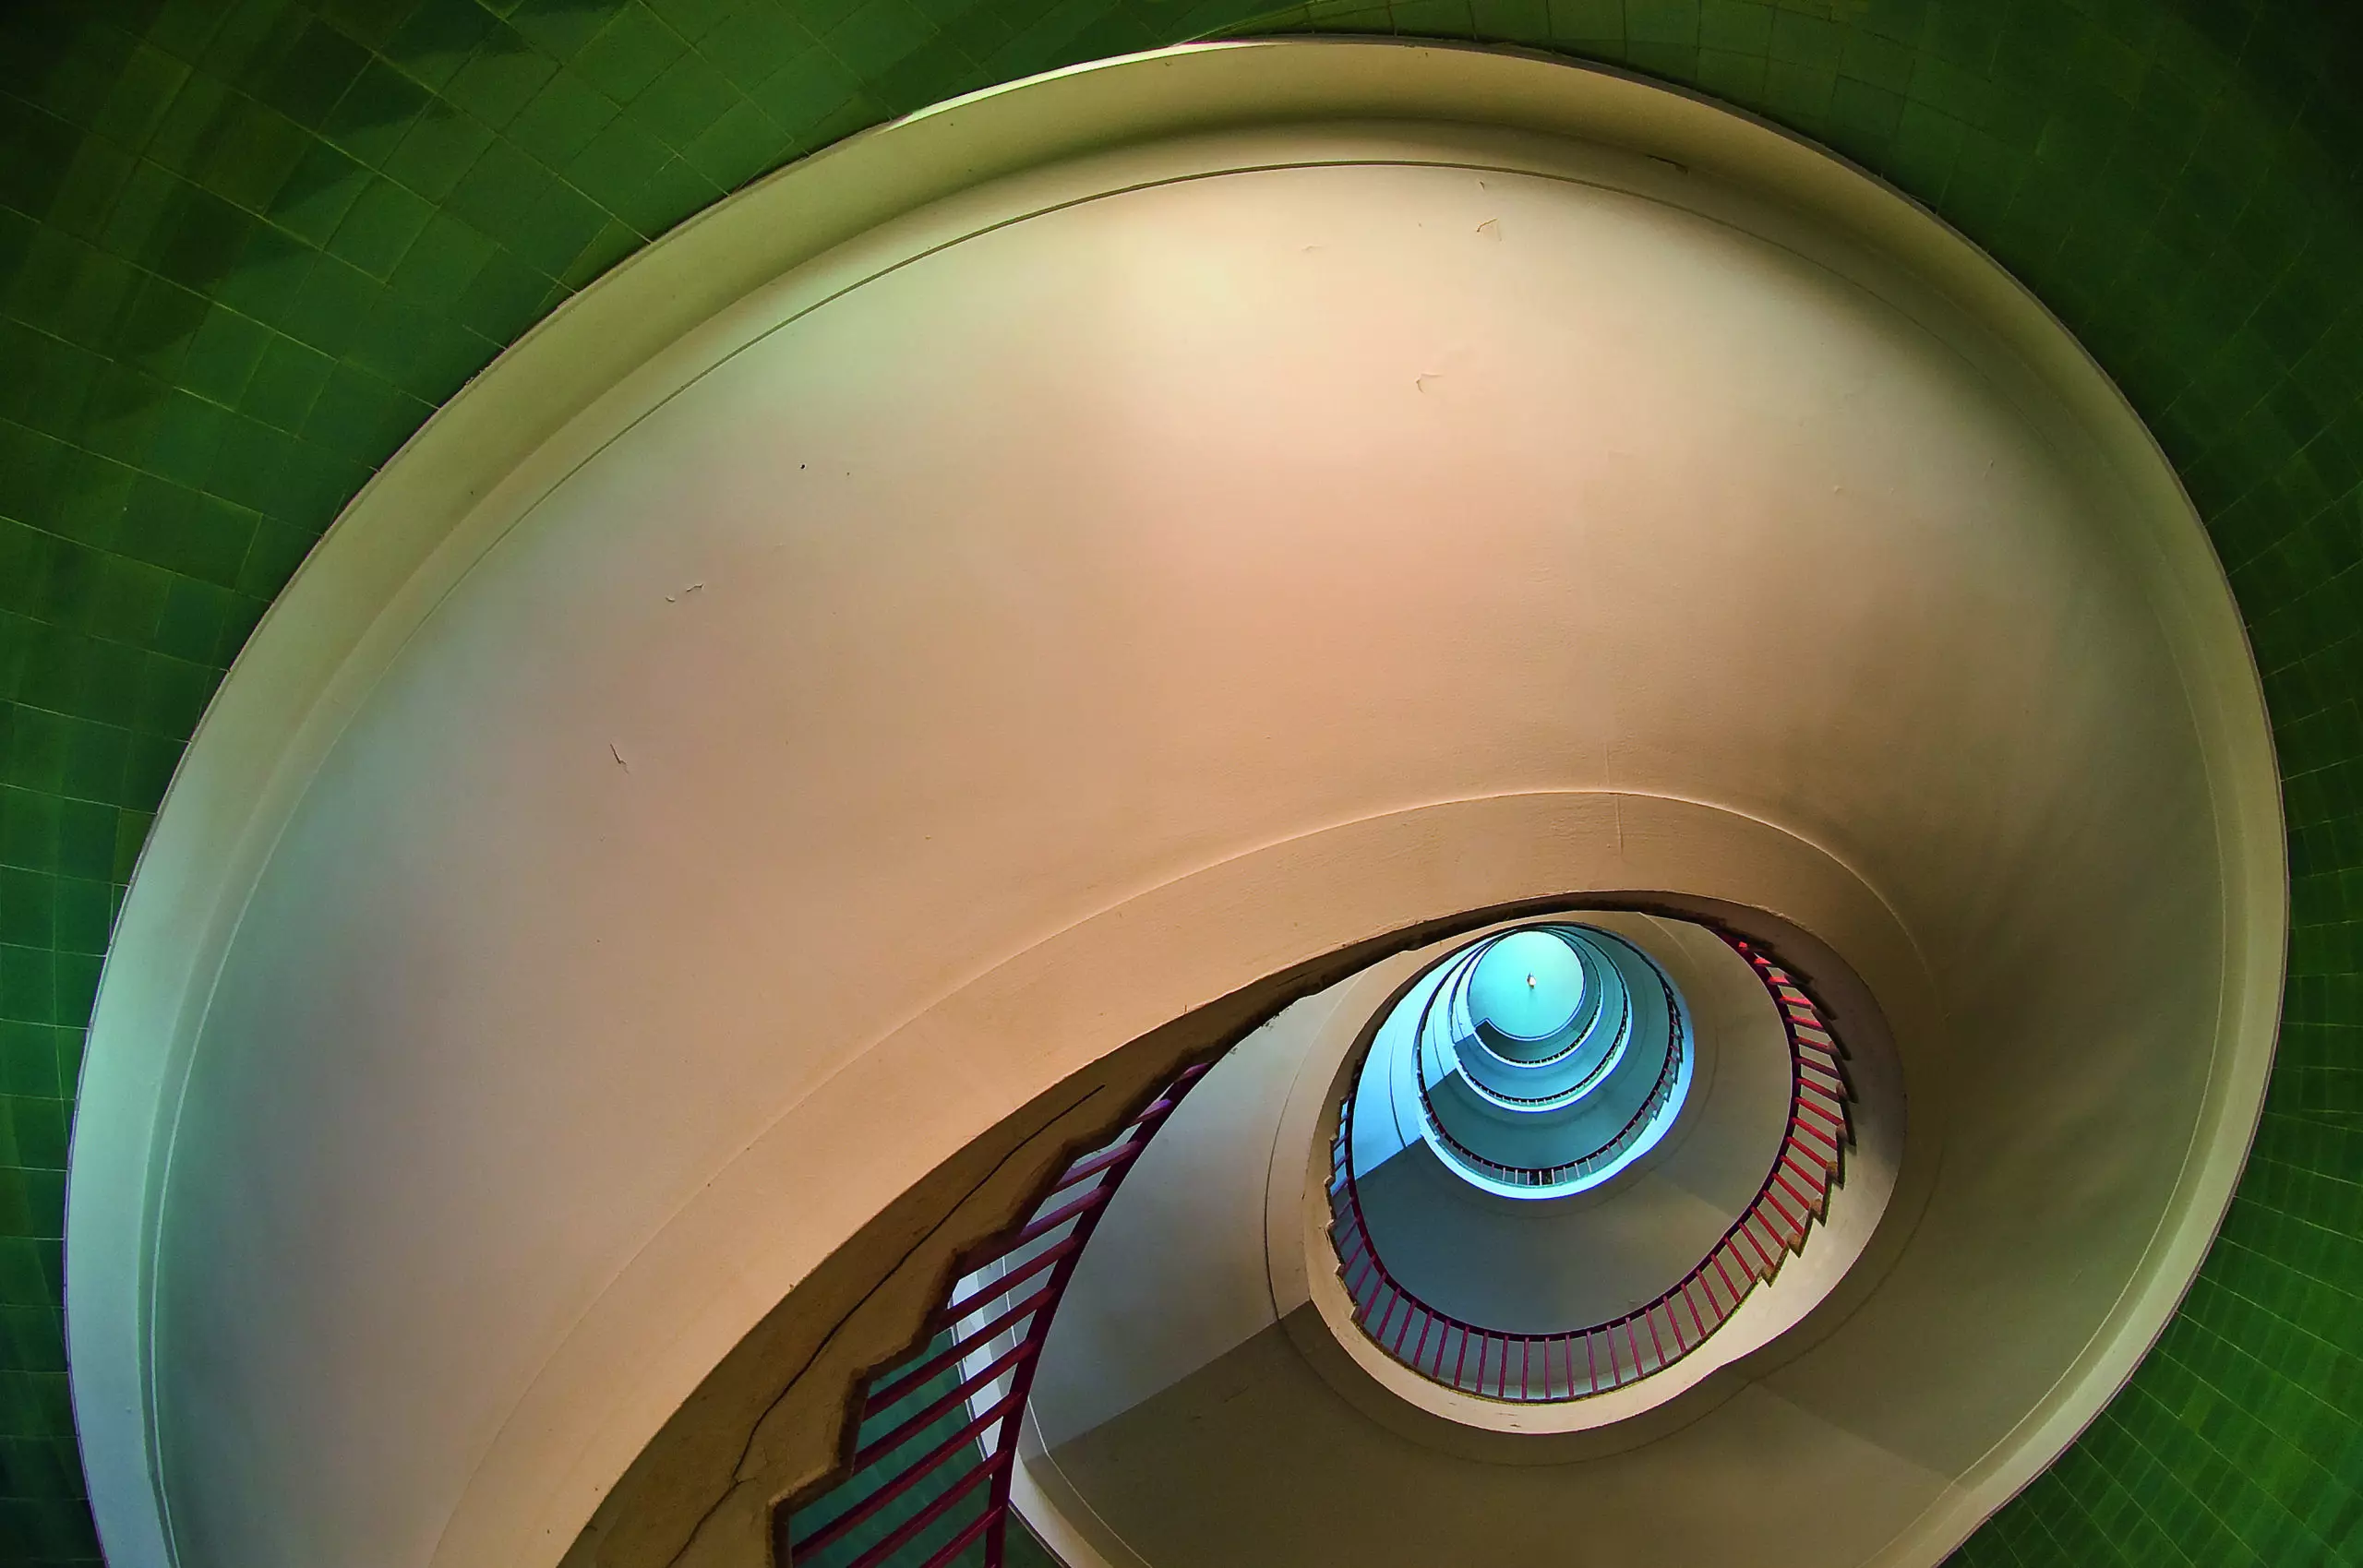 Wandbild (5221) Spiral II by Jure Karvanja präsentiert: Kreatives,Details und Strukturen,Architektur,Abstrakt,Häuser,Sonstige Architektur,Treppe,Architekturdetails